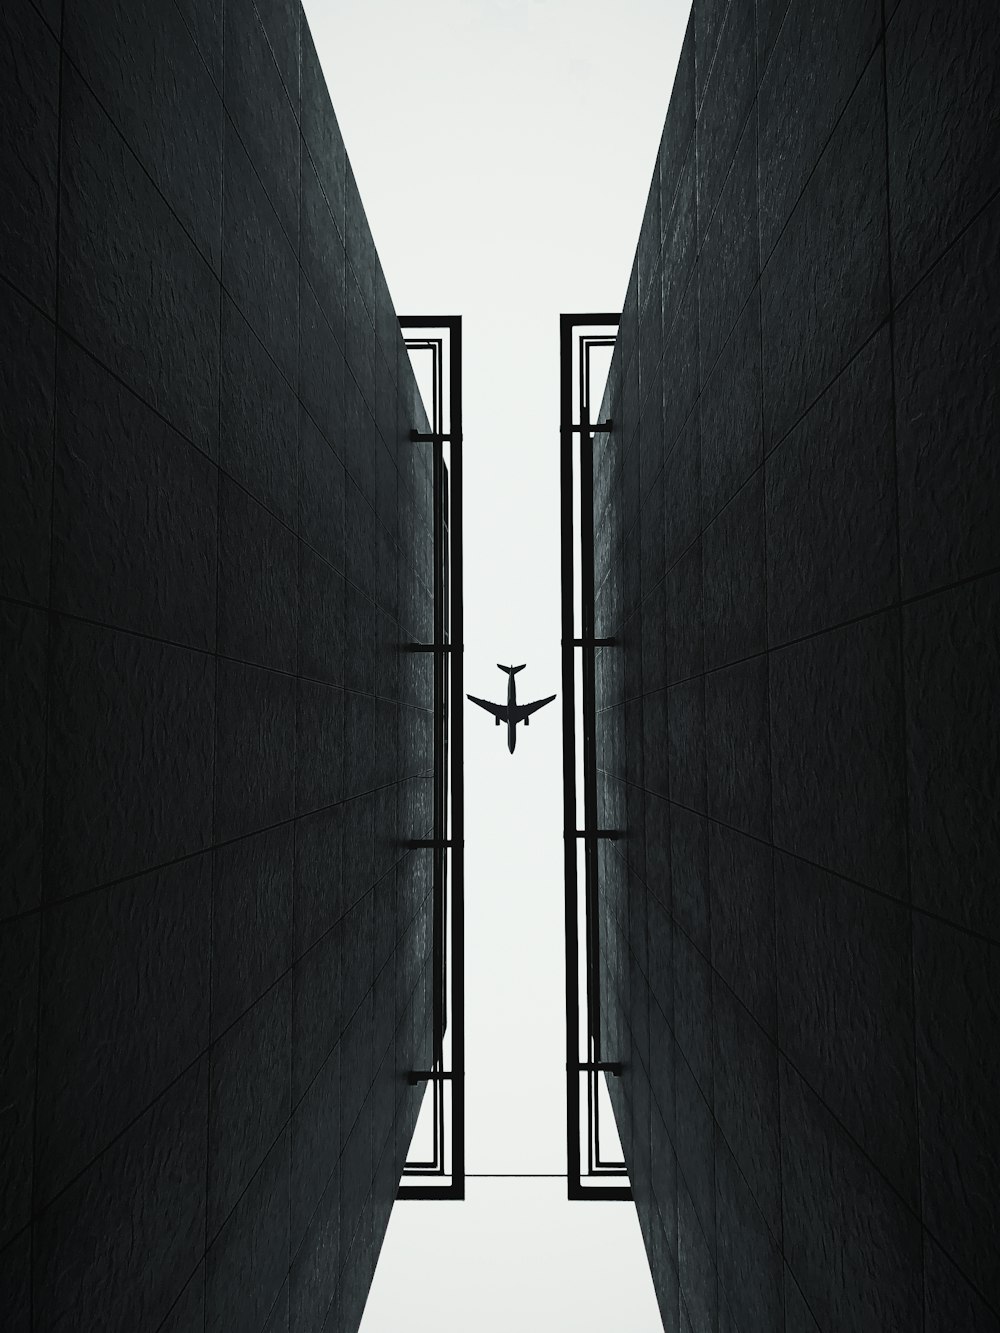 Ein Flugzeug fliegt zwischen zwei Gebäuden durch die Luft